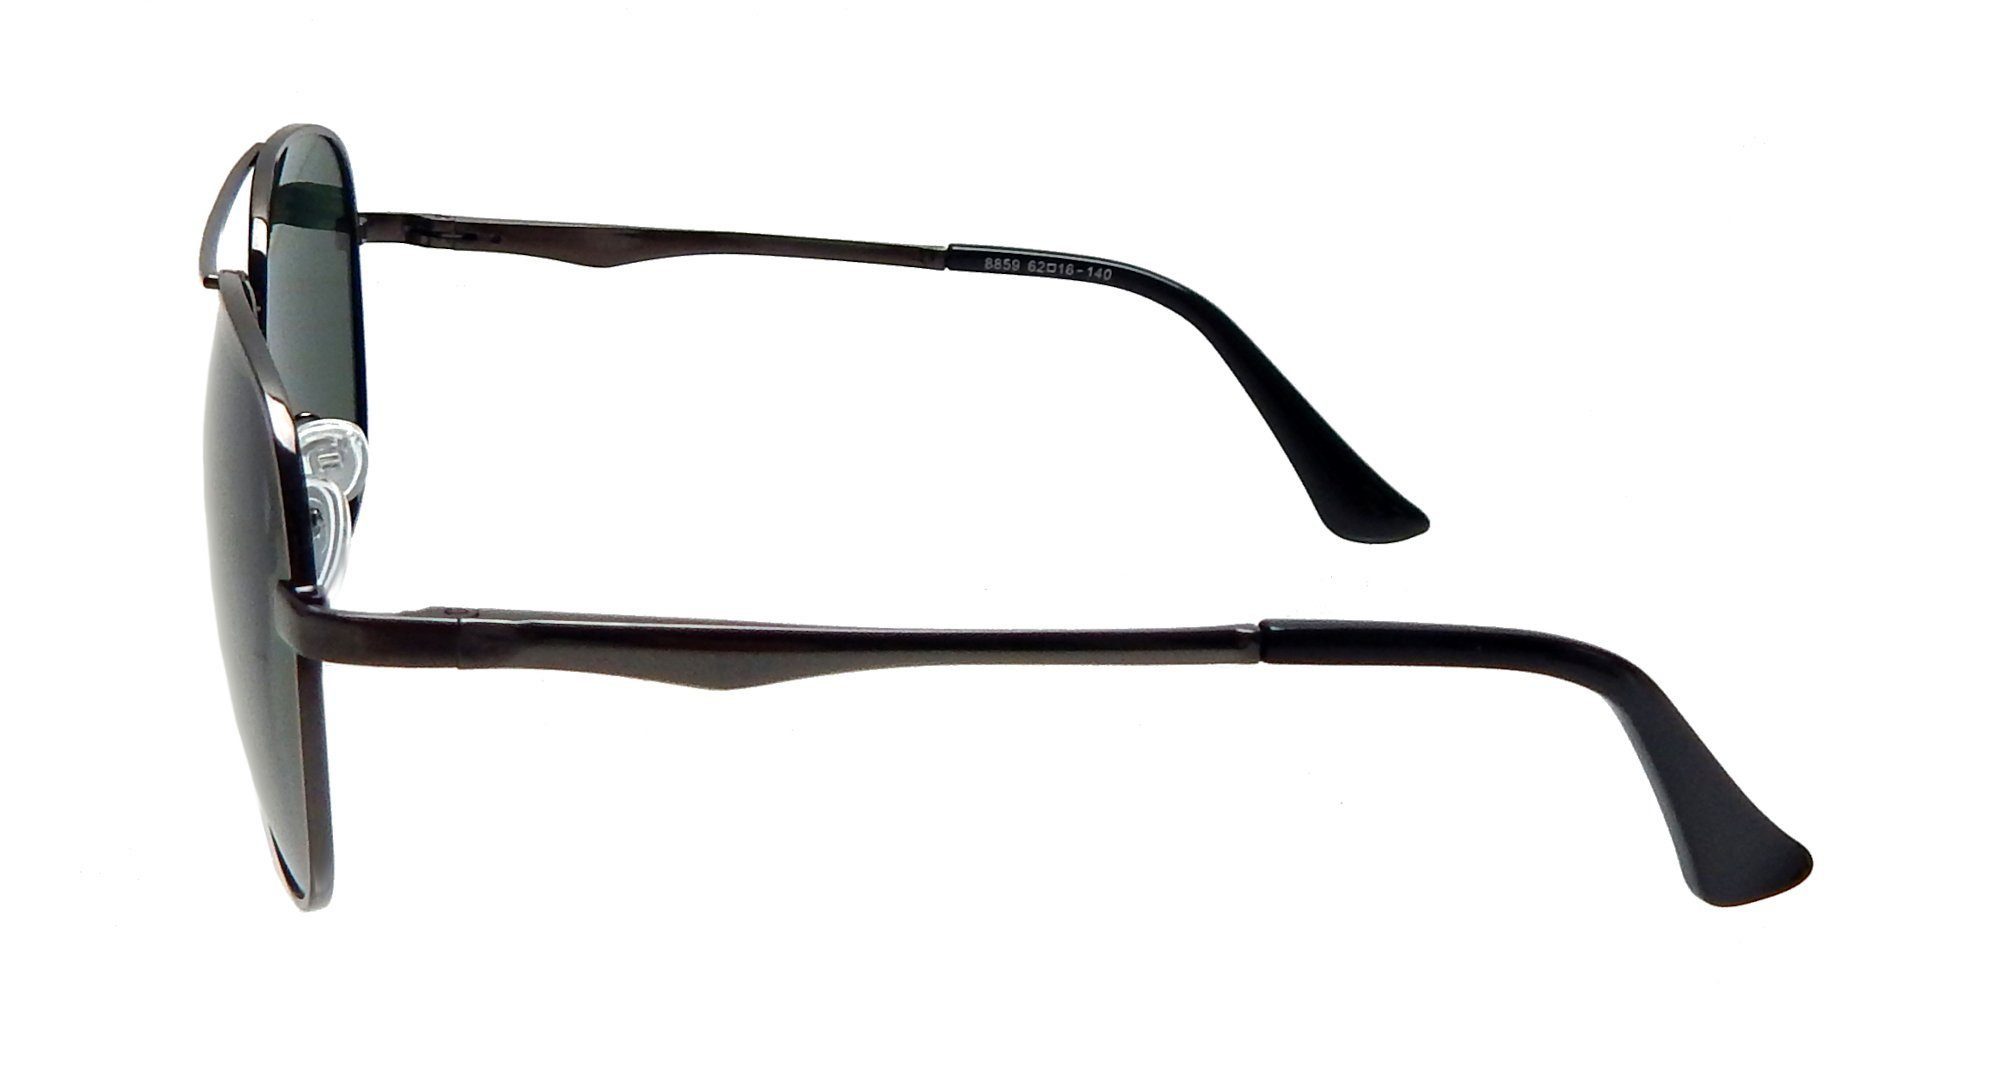 Damen Sonnenbrille schwarz oder grün gold Gläser rechteckig - Ella Jonte